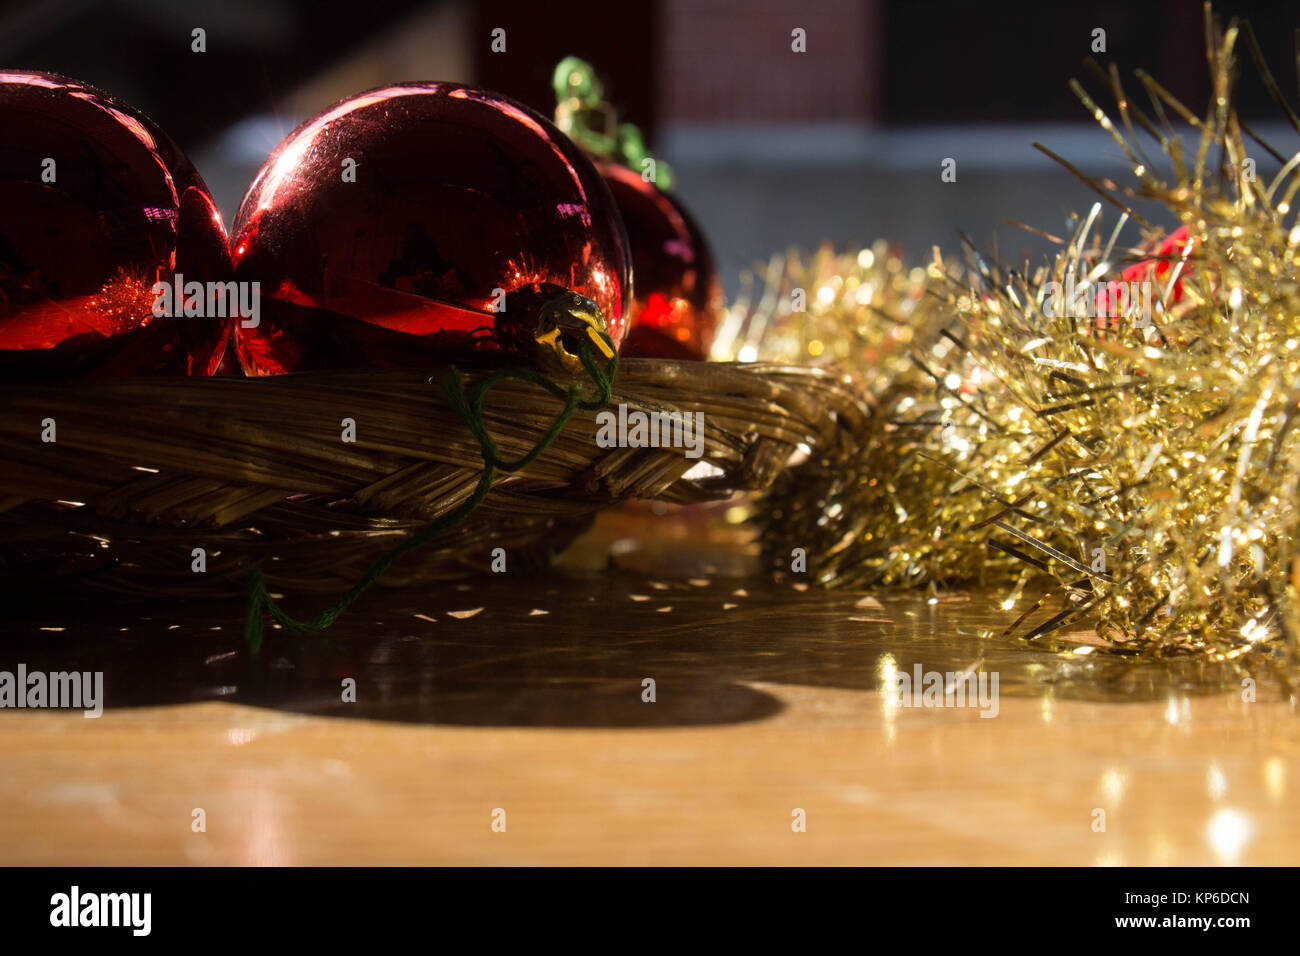 Weihnachtsschmuck Stockfoto